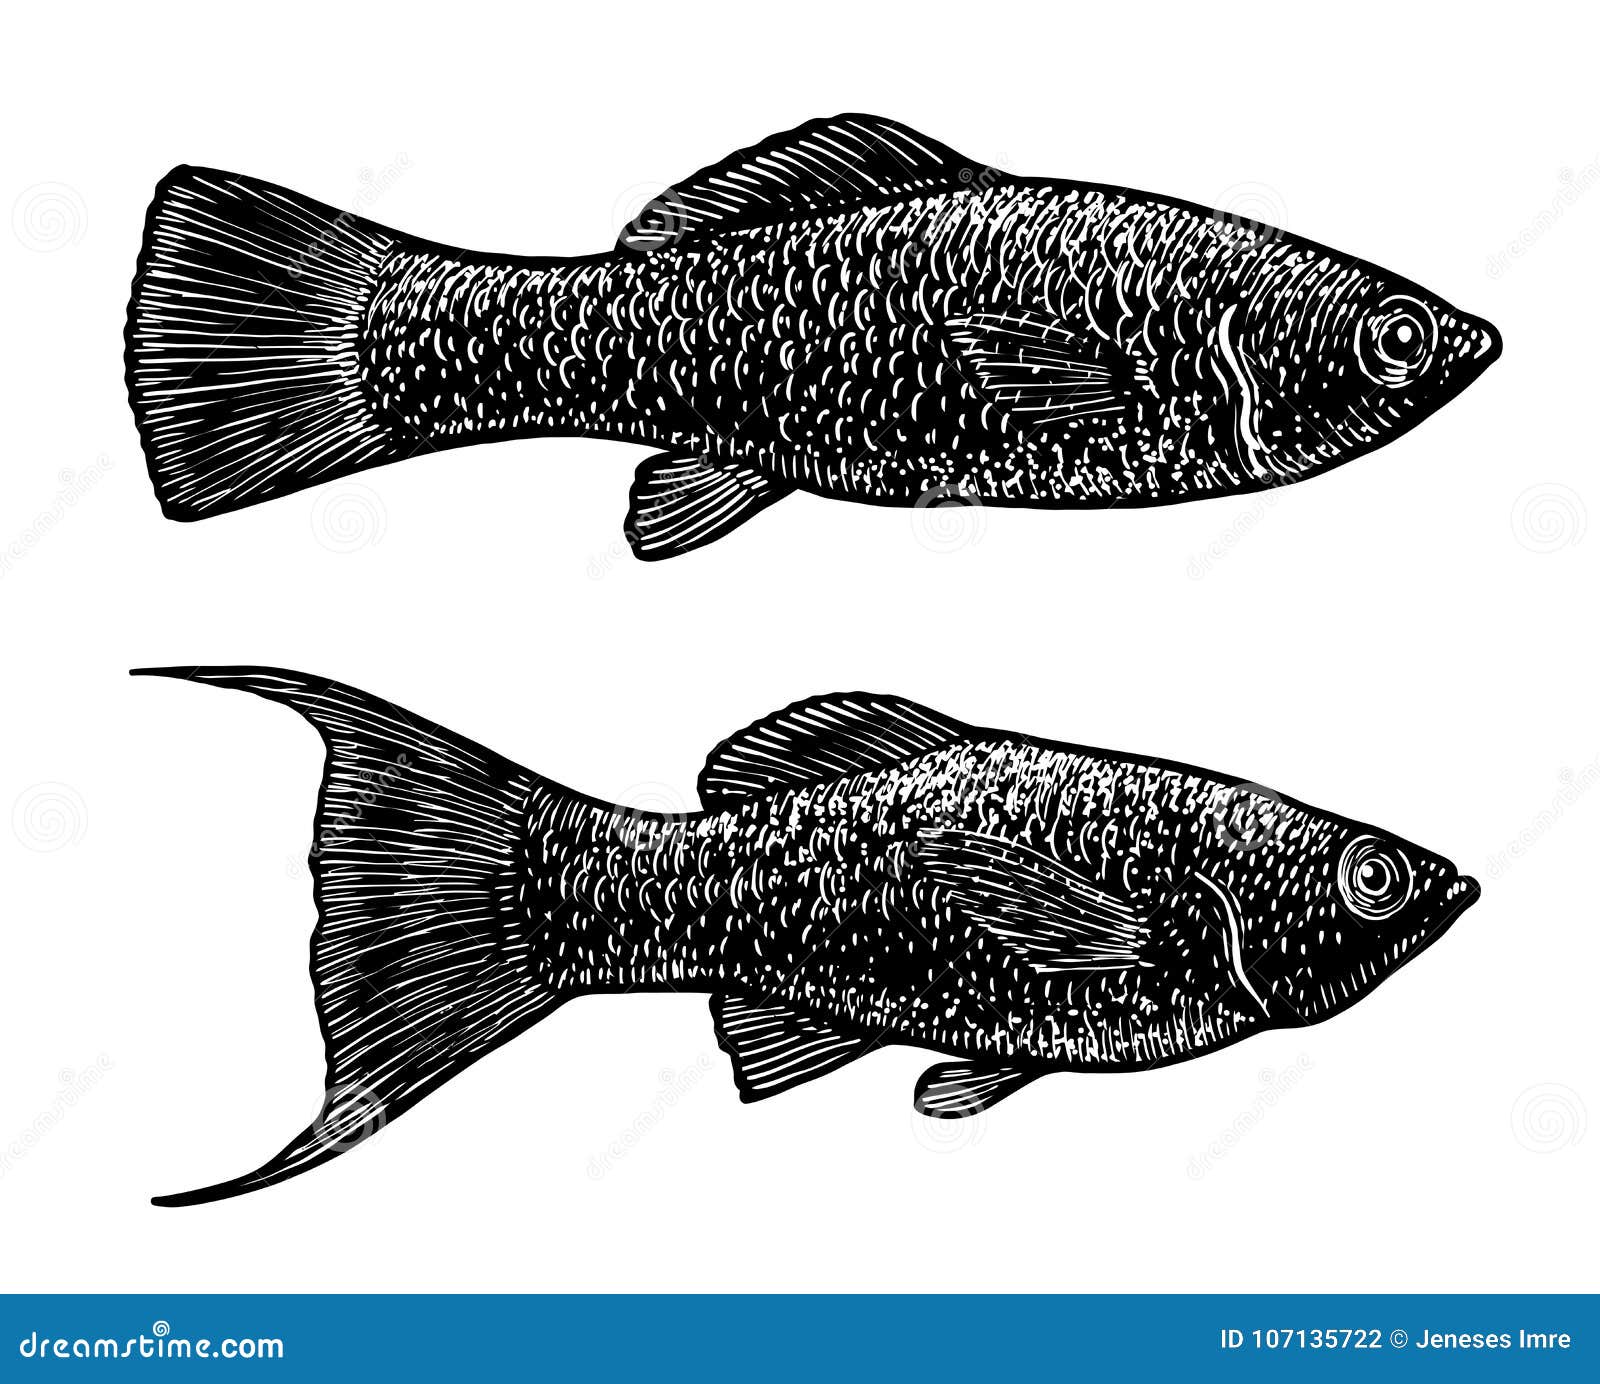 Как отличить самца моллинезия. Моллинезия самка и самец отличие. Моллинезия самец и самка. Моллинезия чёрная самец и самка. Моллинезия рыбка самец.